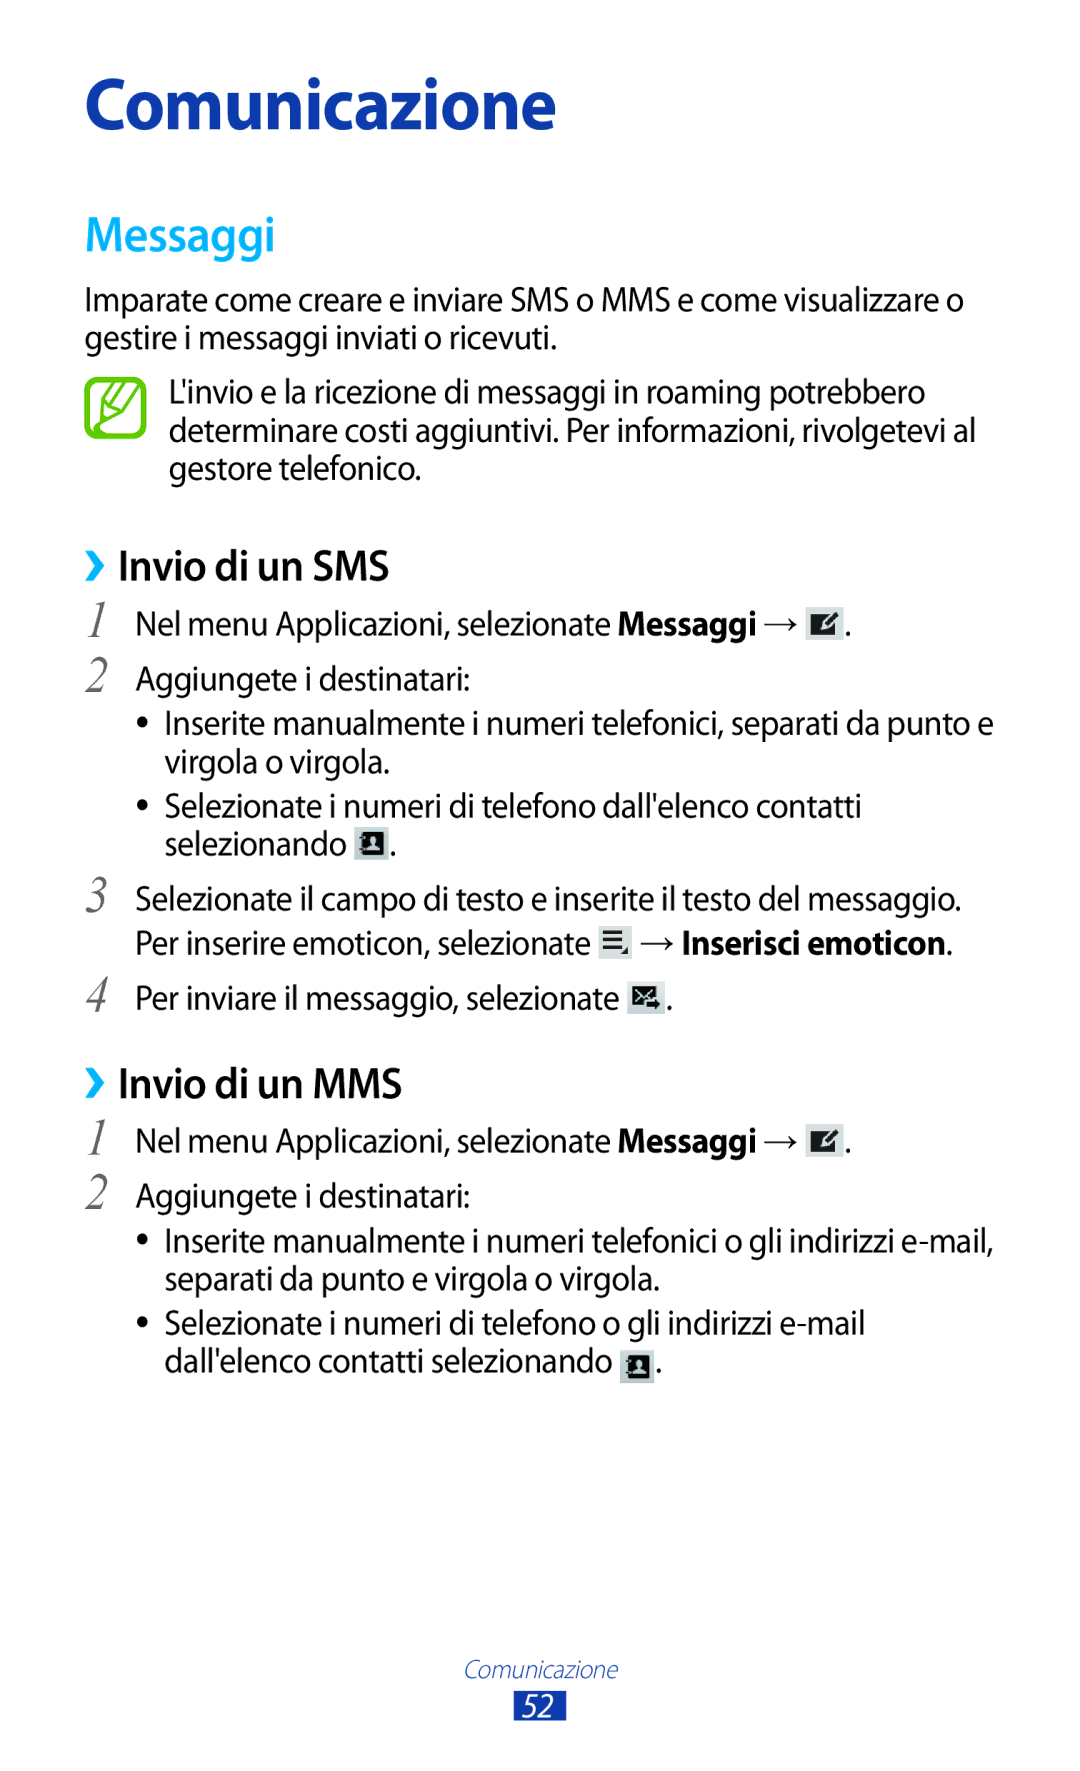 Samsung GT-P7500UWDOMN, GT-P7500FKDOMN, GT-P7500UWDHUI, GT-P7500FKDITV manual Messaggi, ››Invio di un SMS, ››Invio di un MMS 